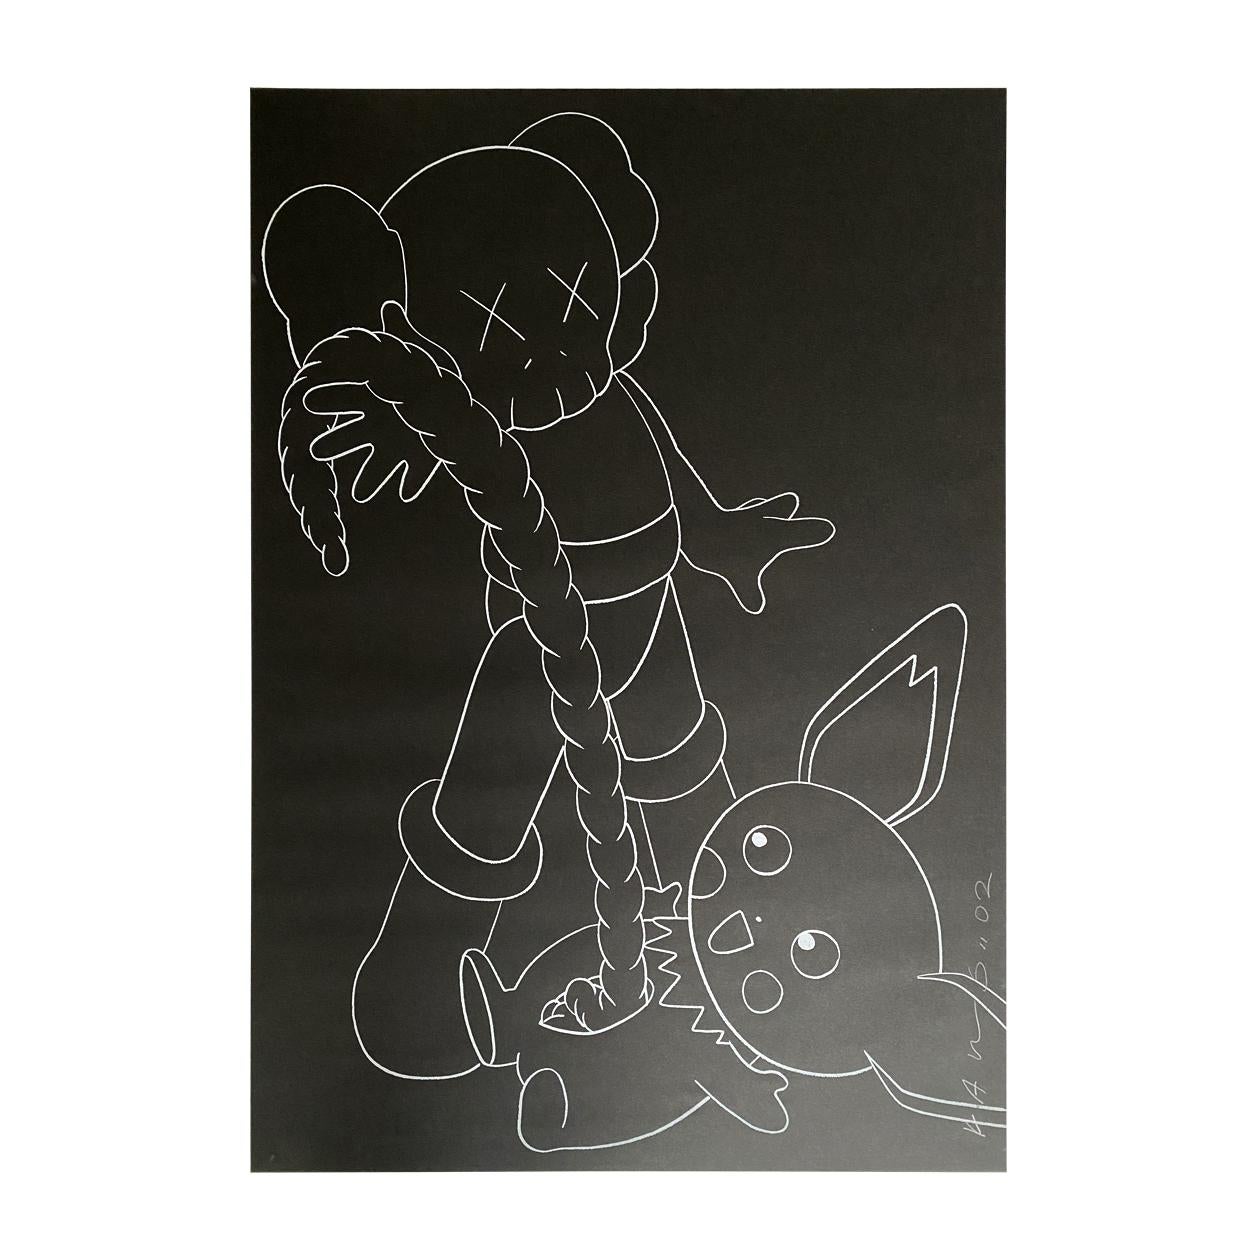 Companion vs Pikachu - Print by KAWS